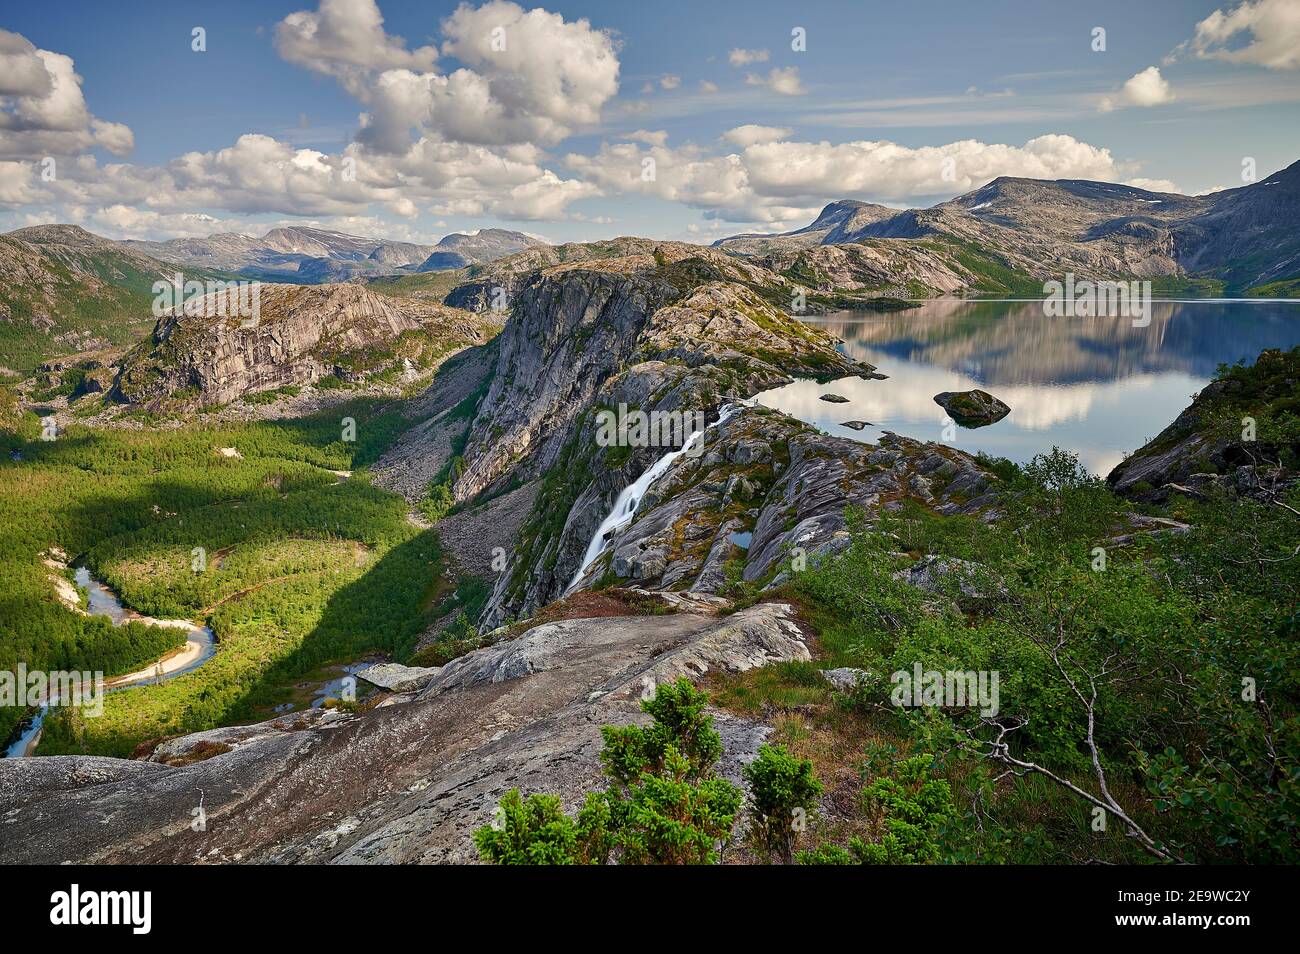 Rago Nationalpark en el municipio de Sørfold en el condado de Nordland, Noruega. Los lagos Storskogvatnet y Litlverivatnet se encuentran dentro del parque. Foto de stock